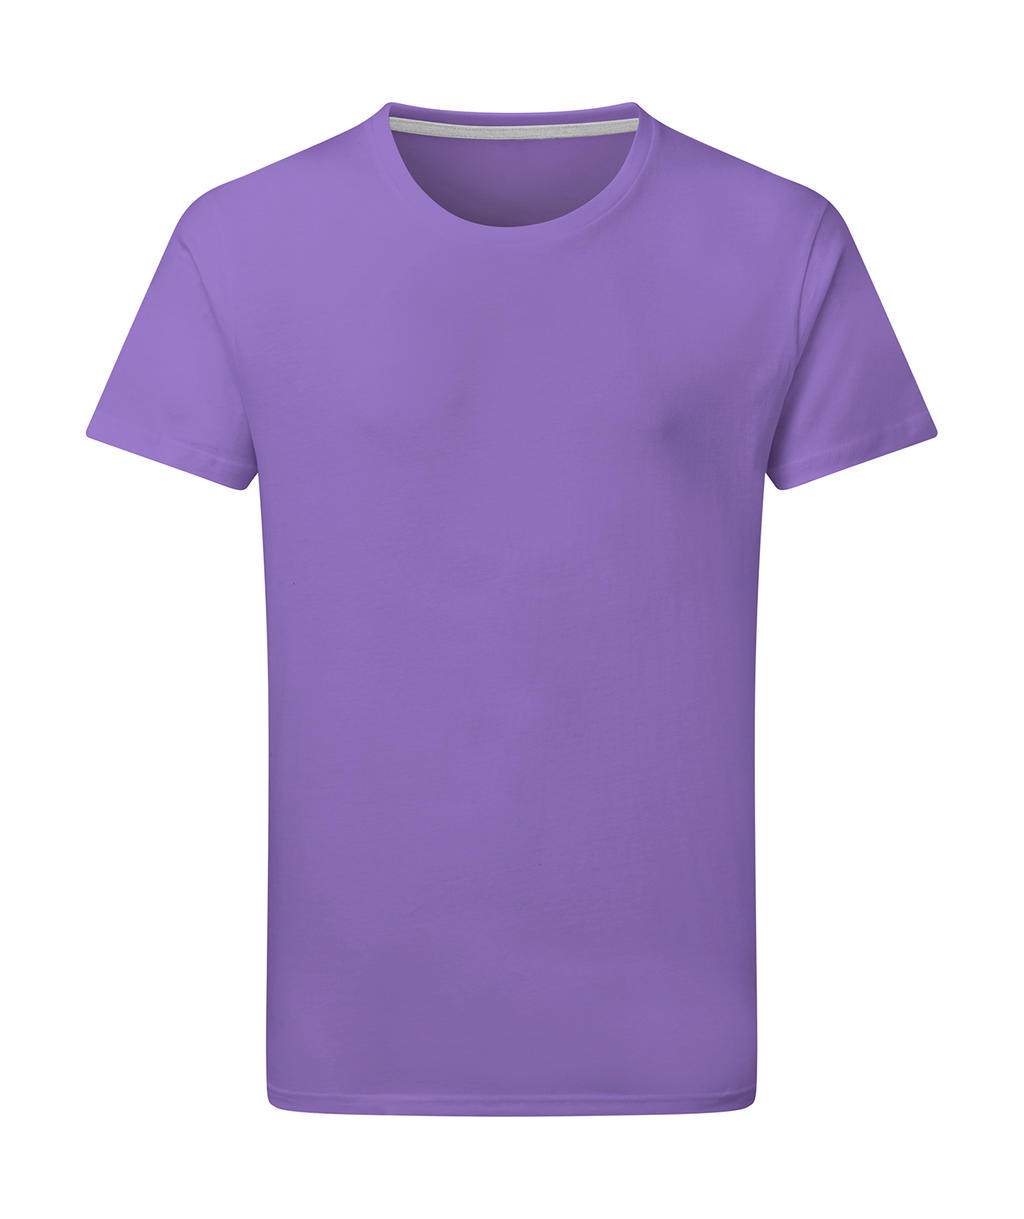 Dokonale potlačiteľné tričko bez štítku - aster purple